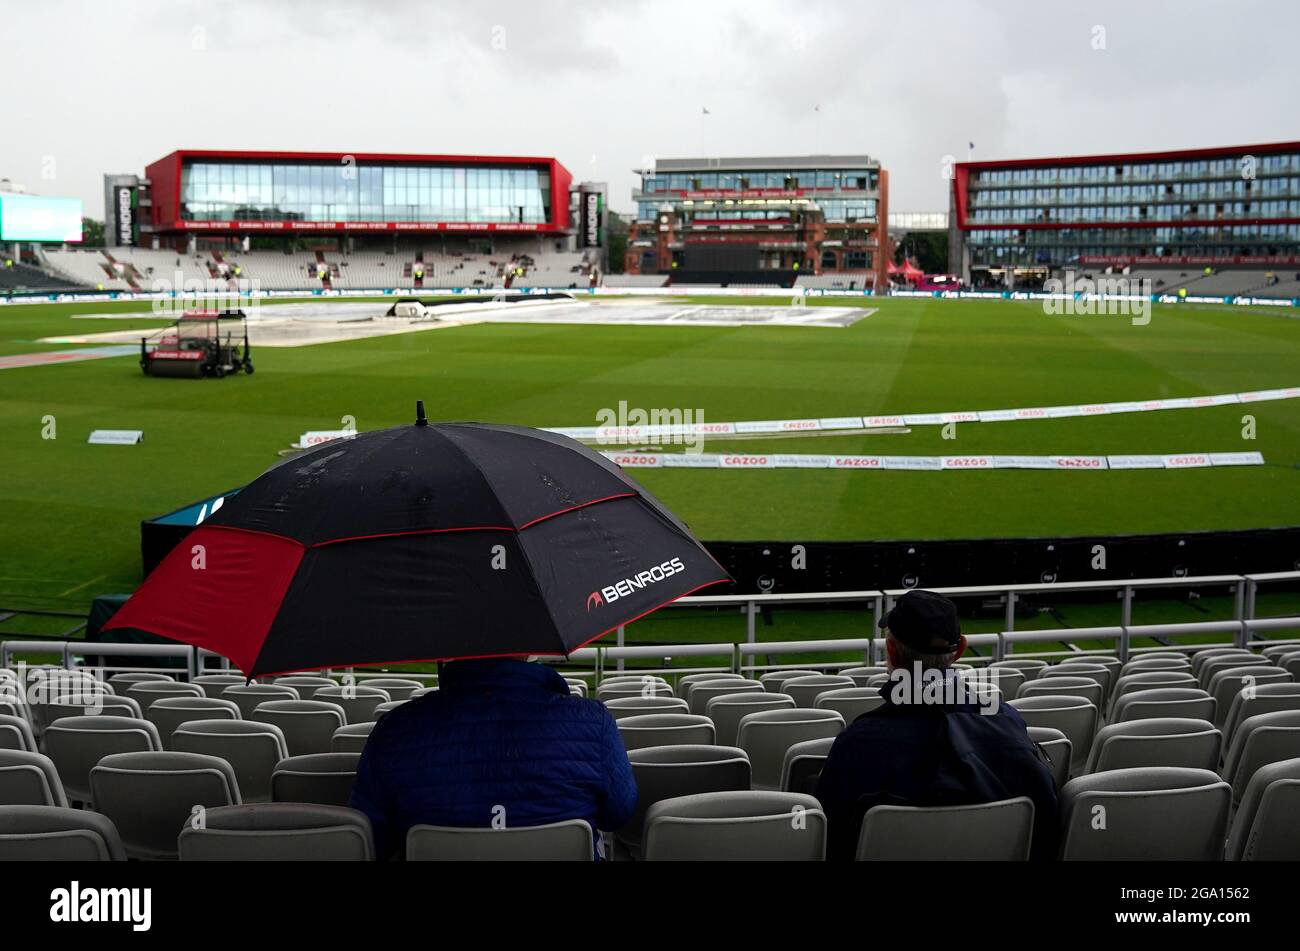 Die Zuschauer halten sich unter einem Regenschirm zurück, während der Regen den Beginn des Spiels während des 100-Matches im Emirates Old Trafford, Manchester, verzögert. Bilddatum: Mittwoch, 28. Juli 2021. Stockfoto